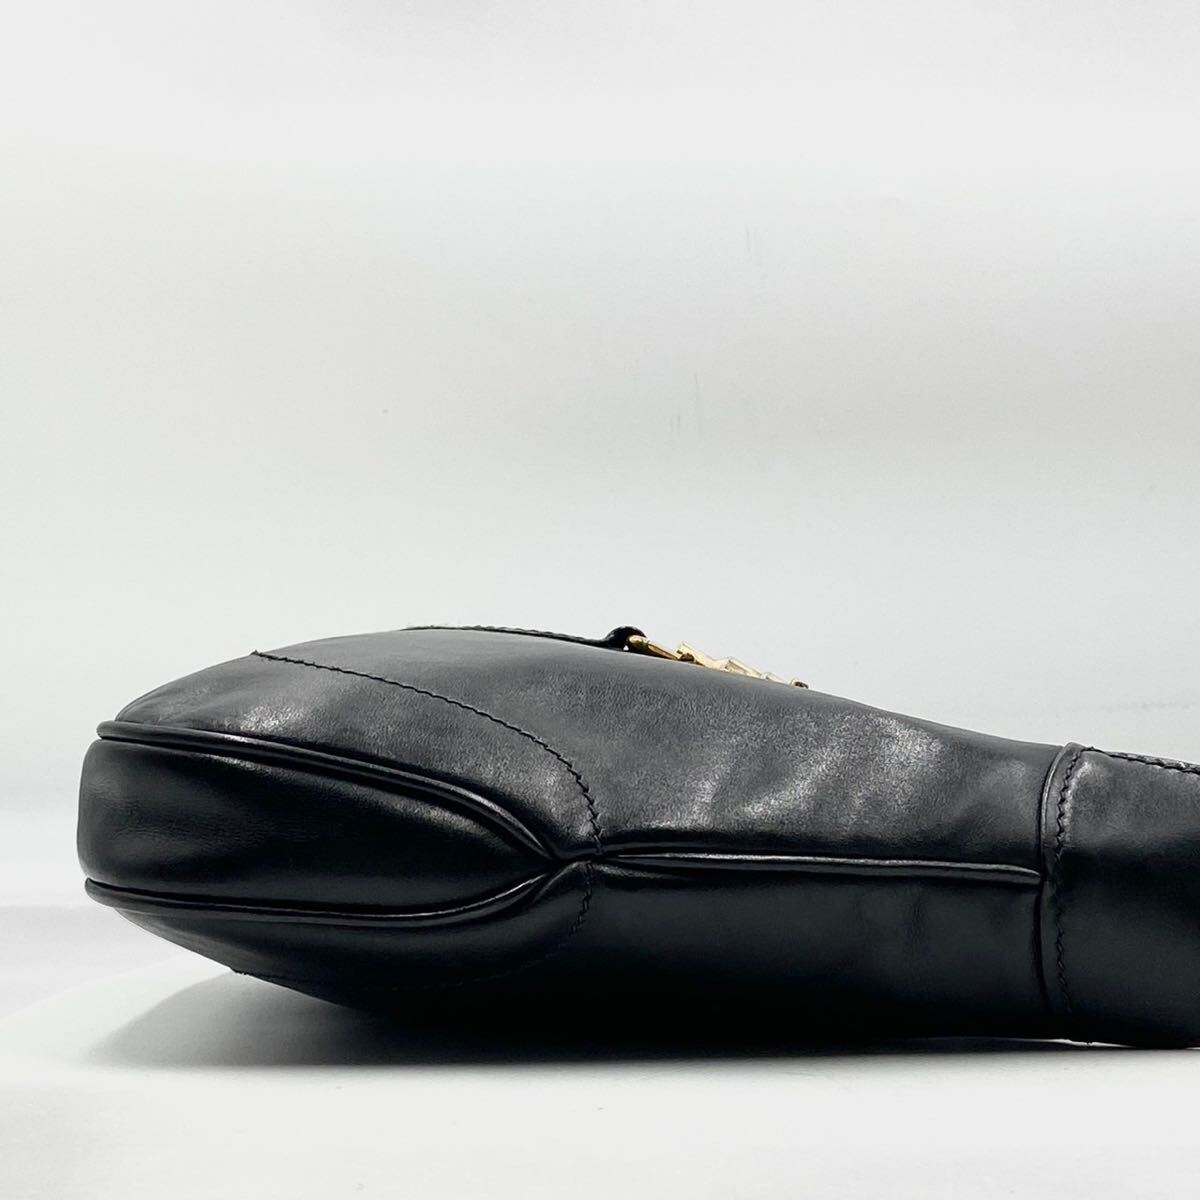 1 иен [ супер редкий / прекрасный товар ]GUCCI Gucci новый домкрат - Sherry линия 2way сумка на плечо ручная сумочка аксессуары сумка кожа чёрный цвет 